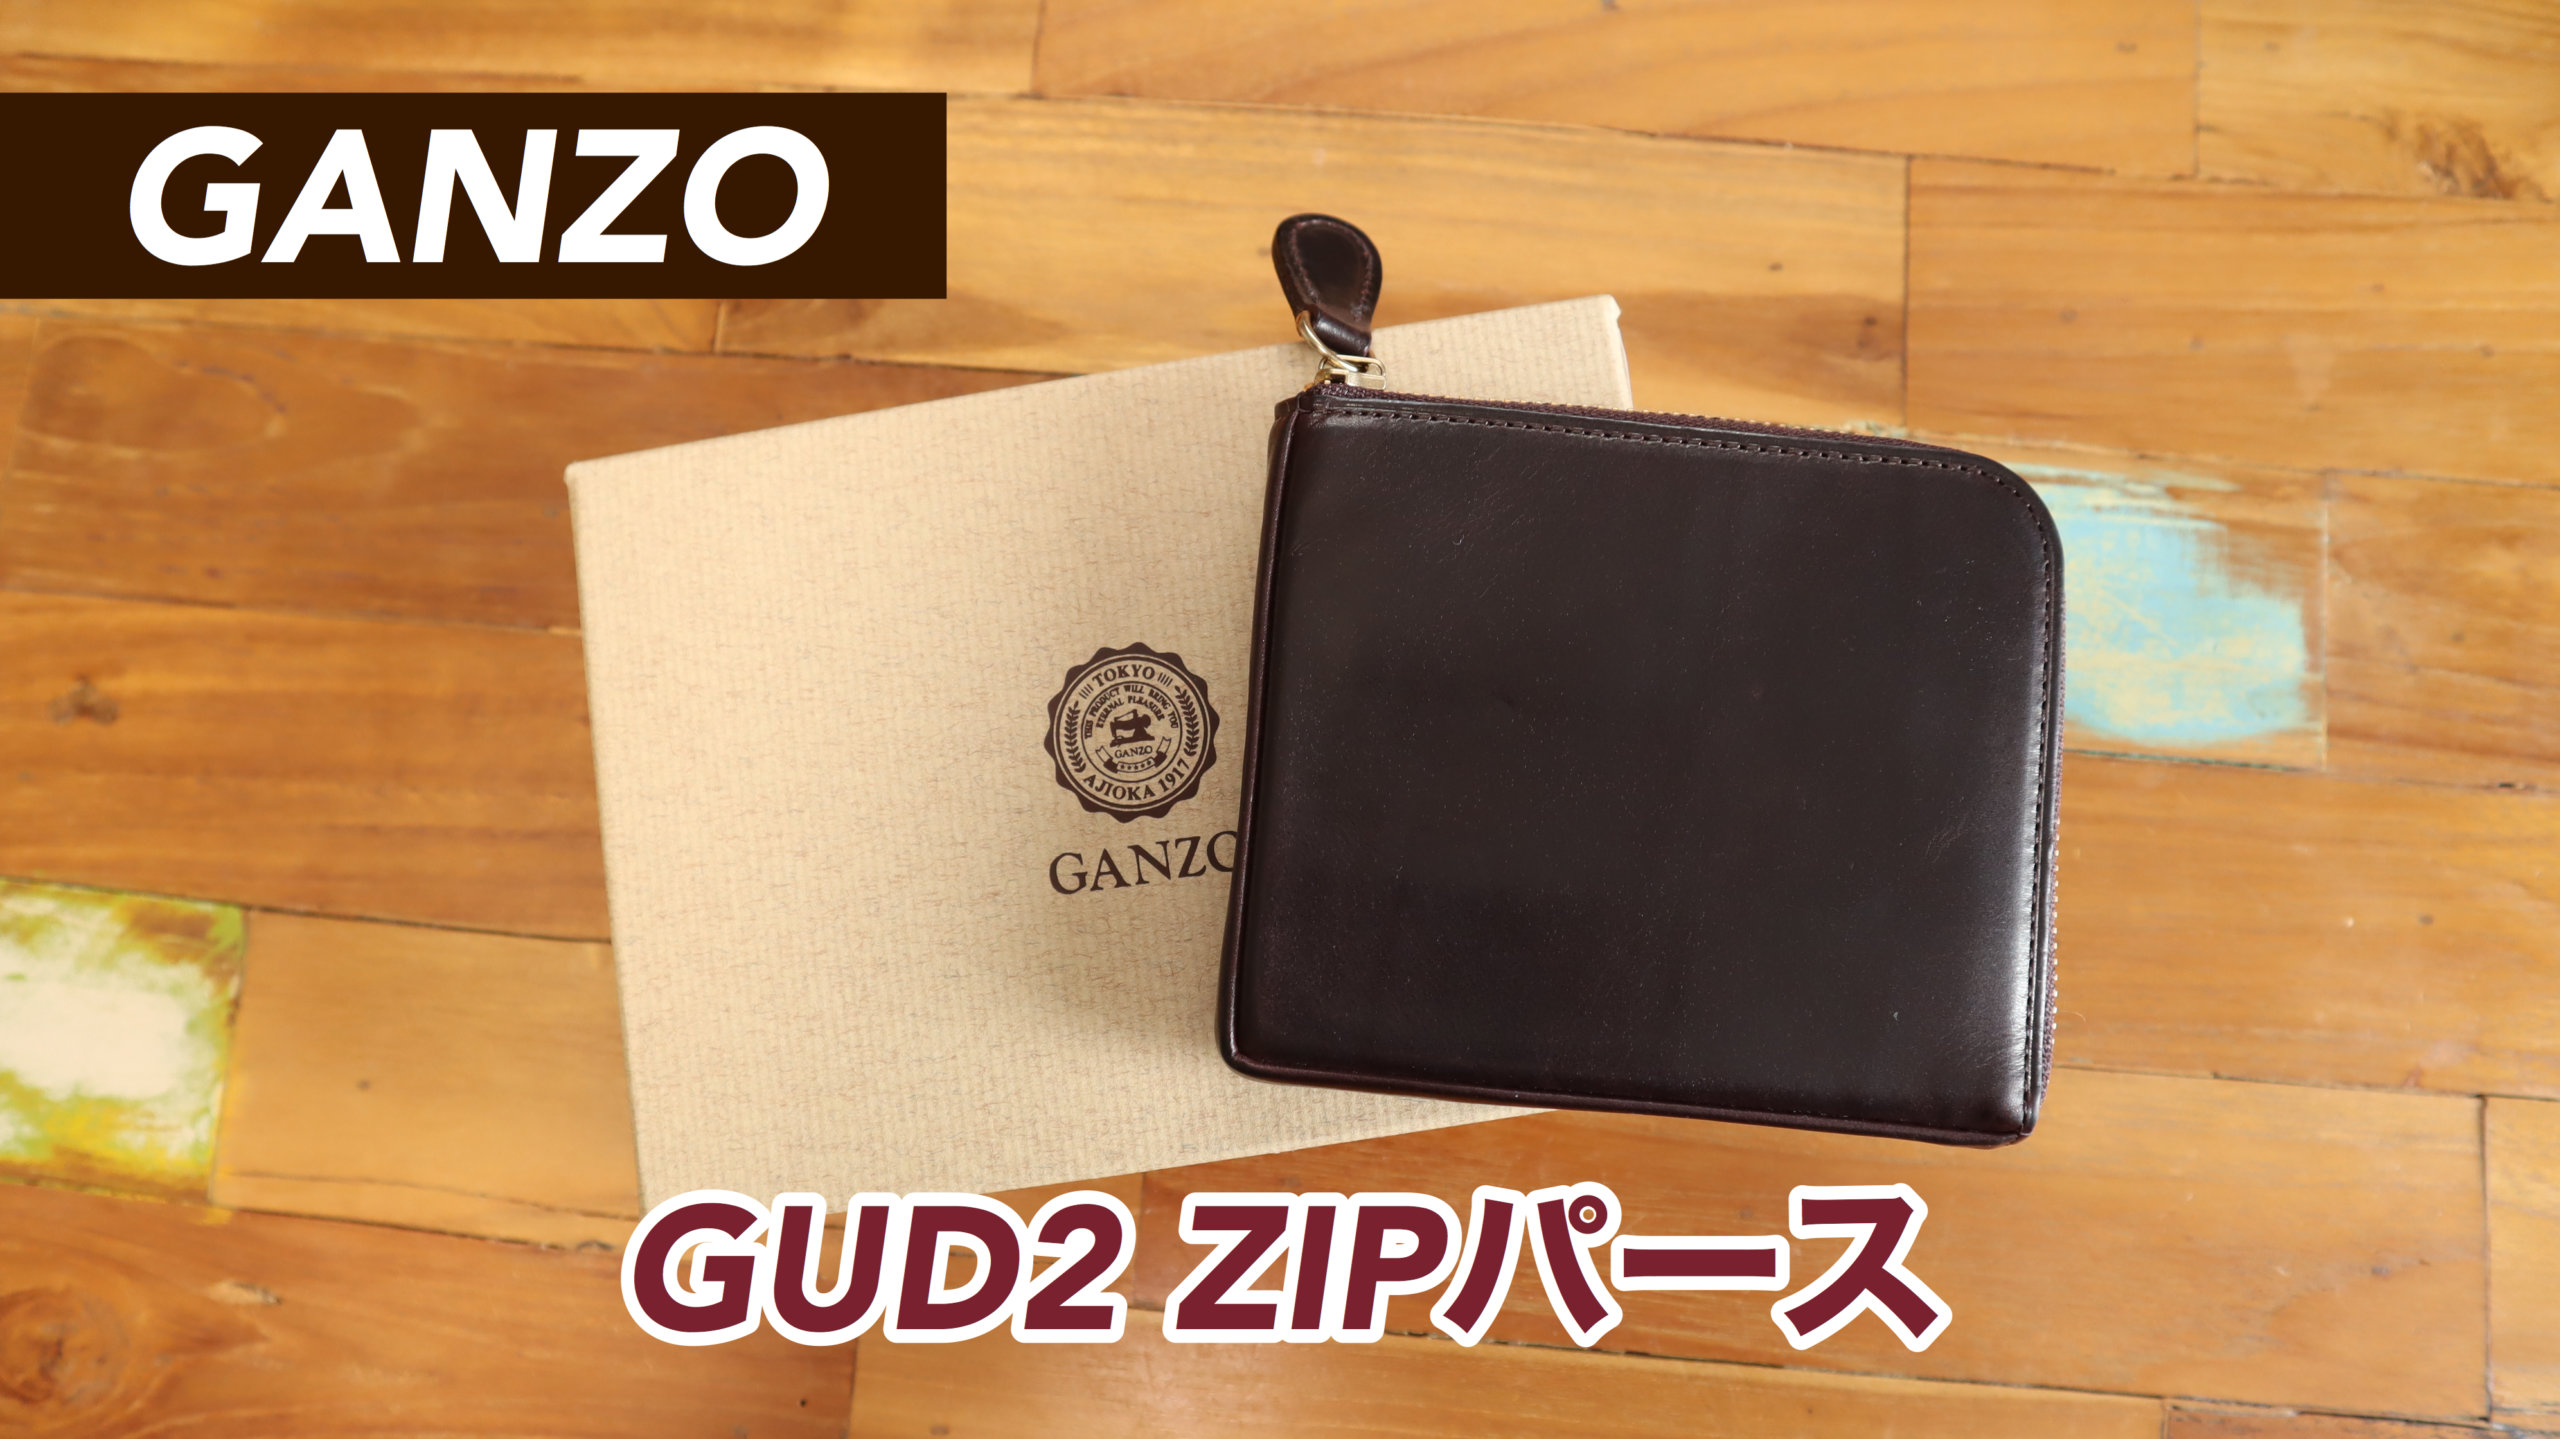 GANZO　L字コインケース付属品はなく財布のみになります